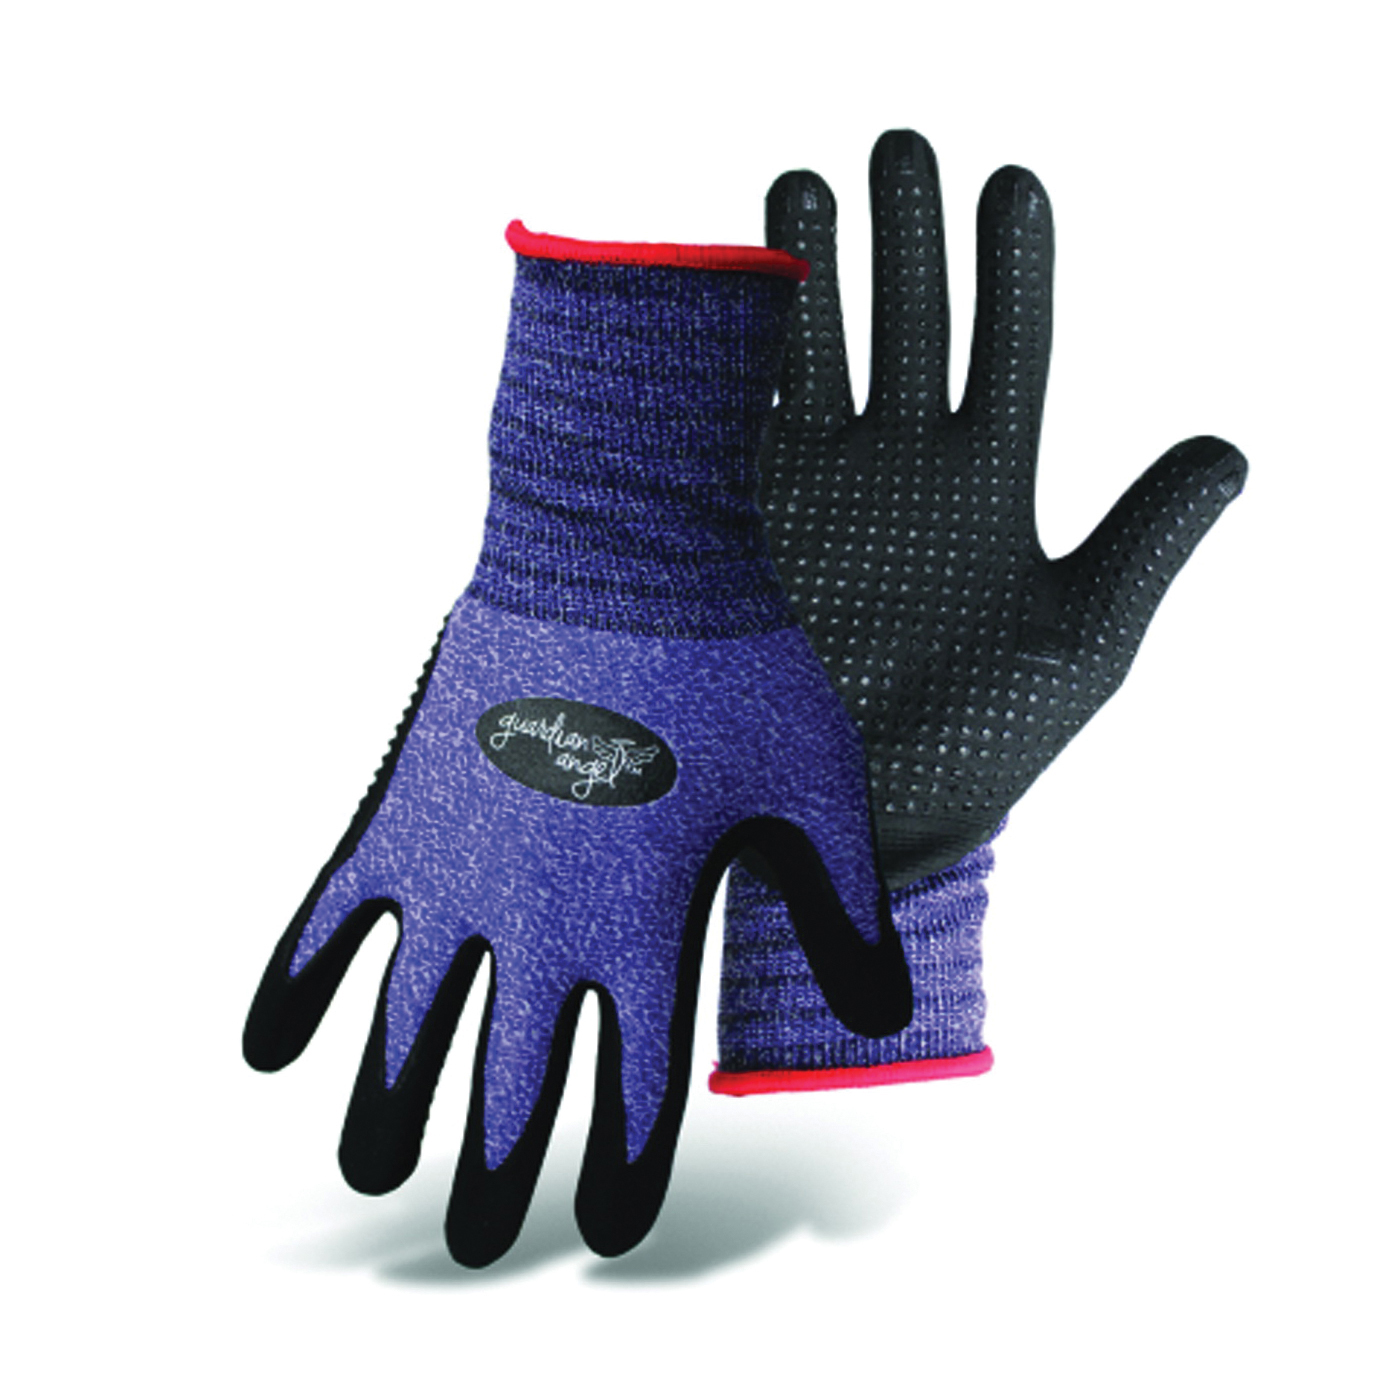 KIT-XS Gloves, XS, Knit Wrist Cuff, Purple/Red